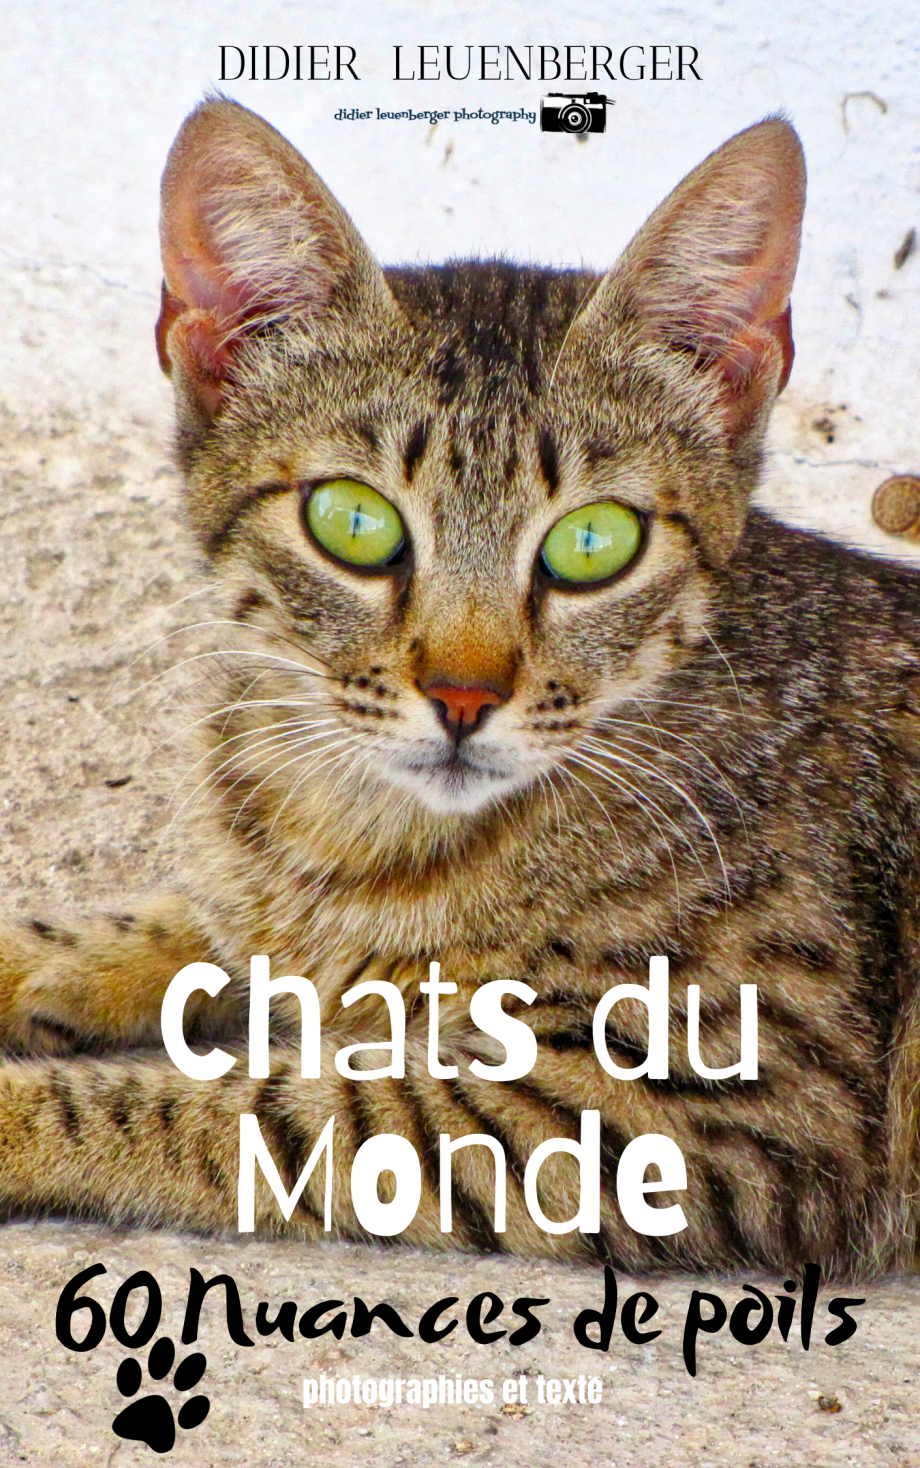 Chat du Mondephoto copie.png